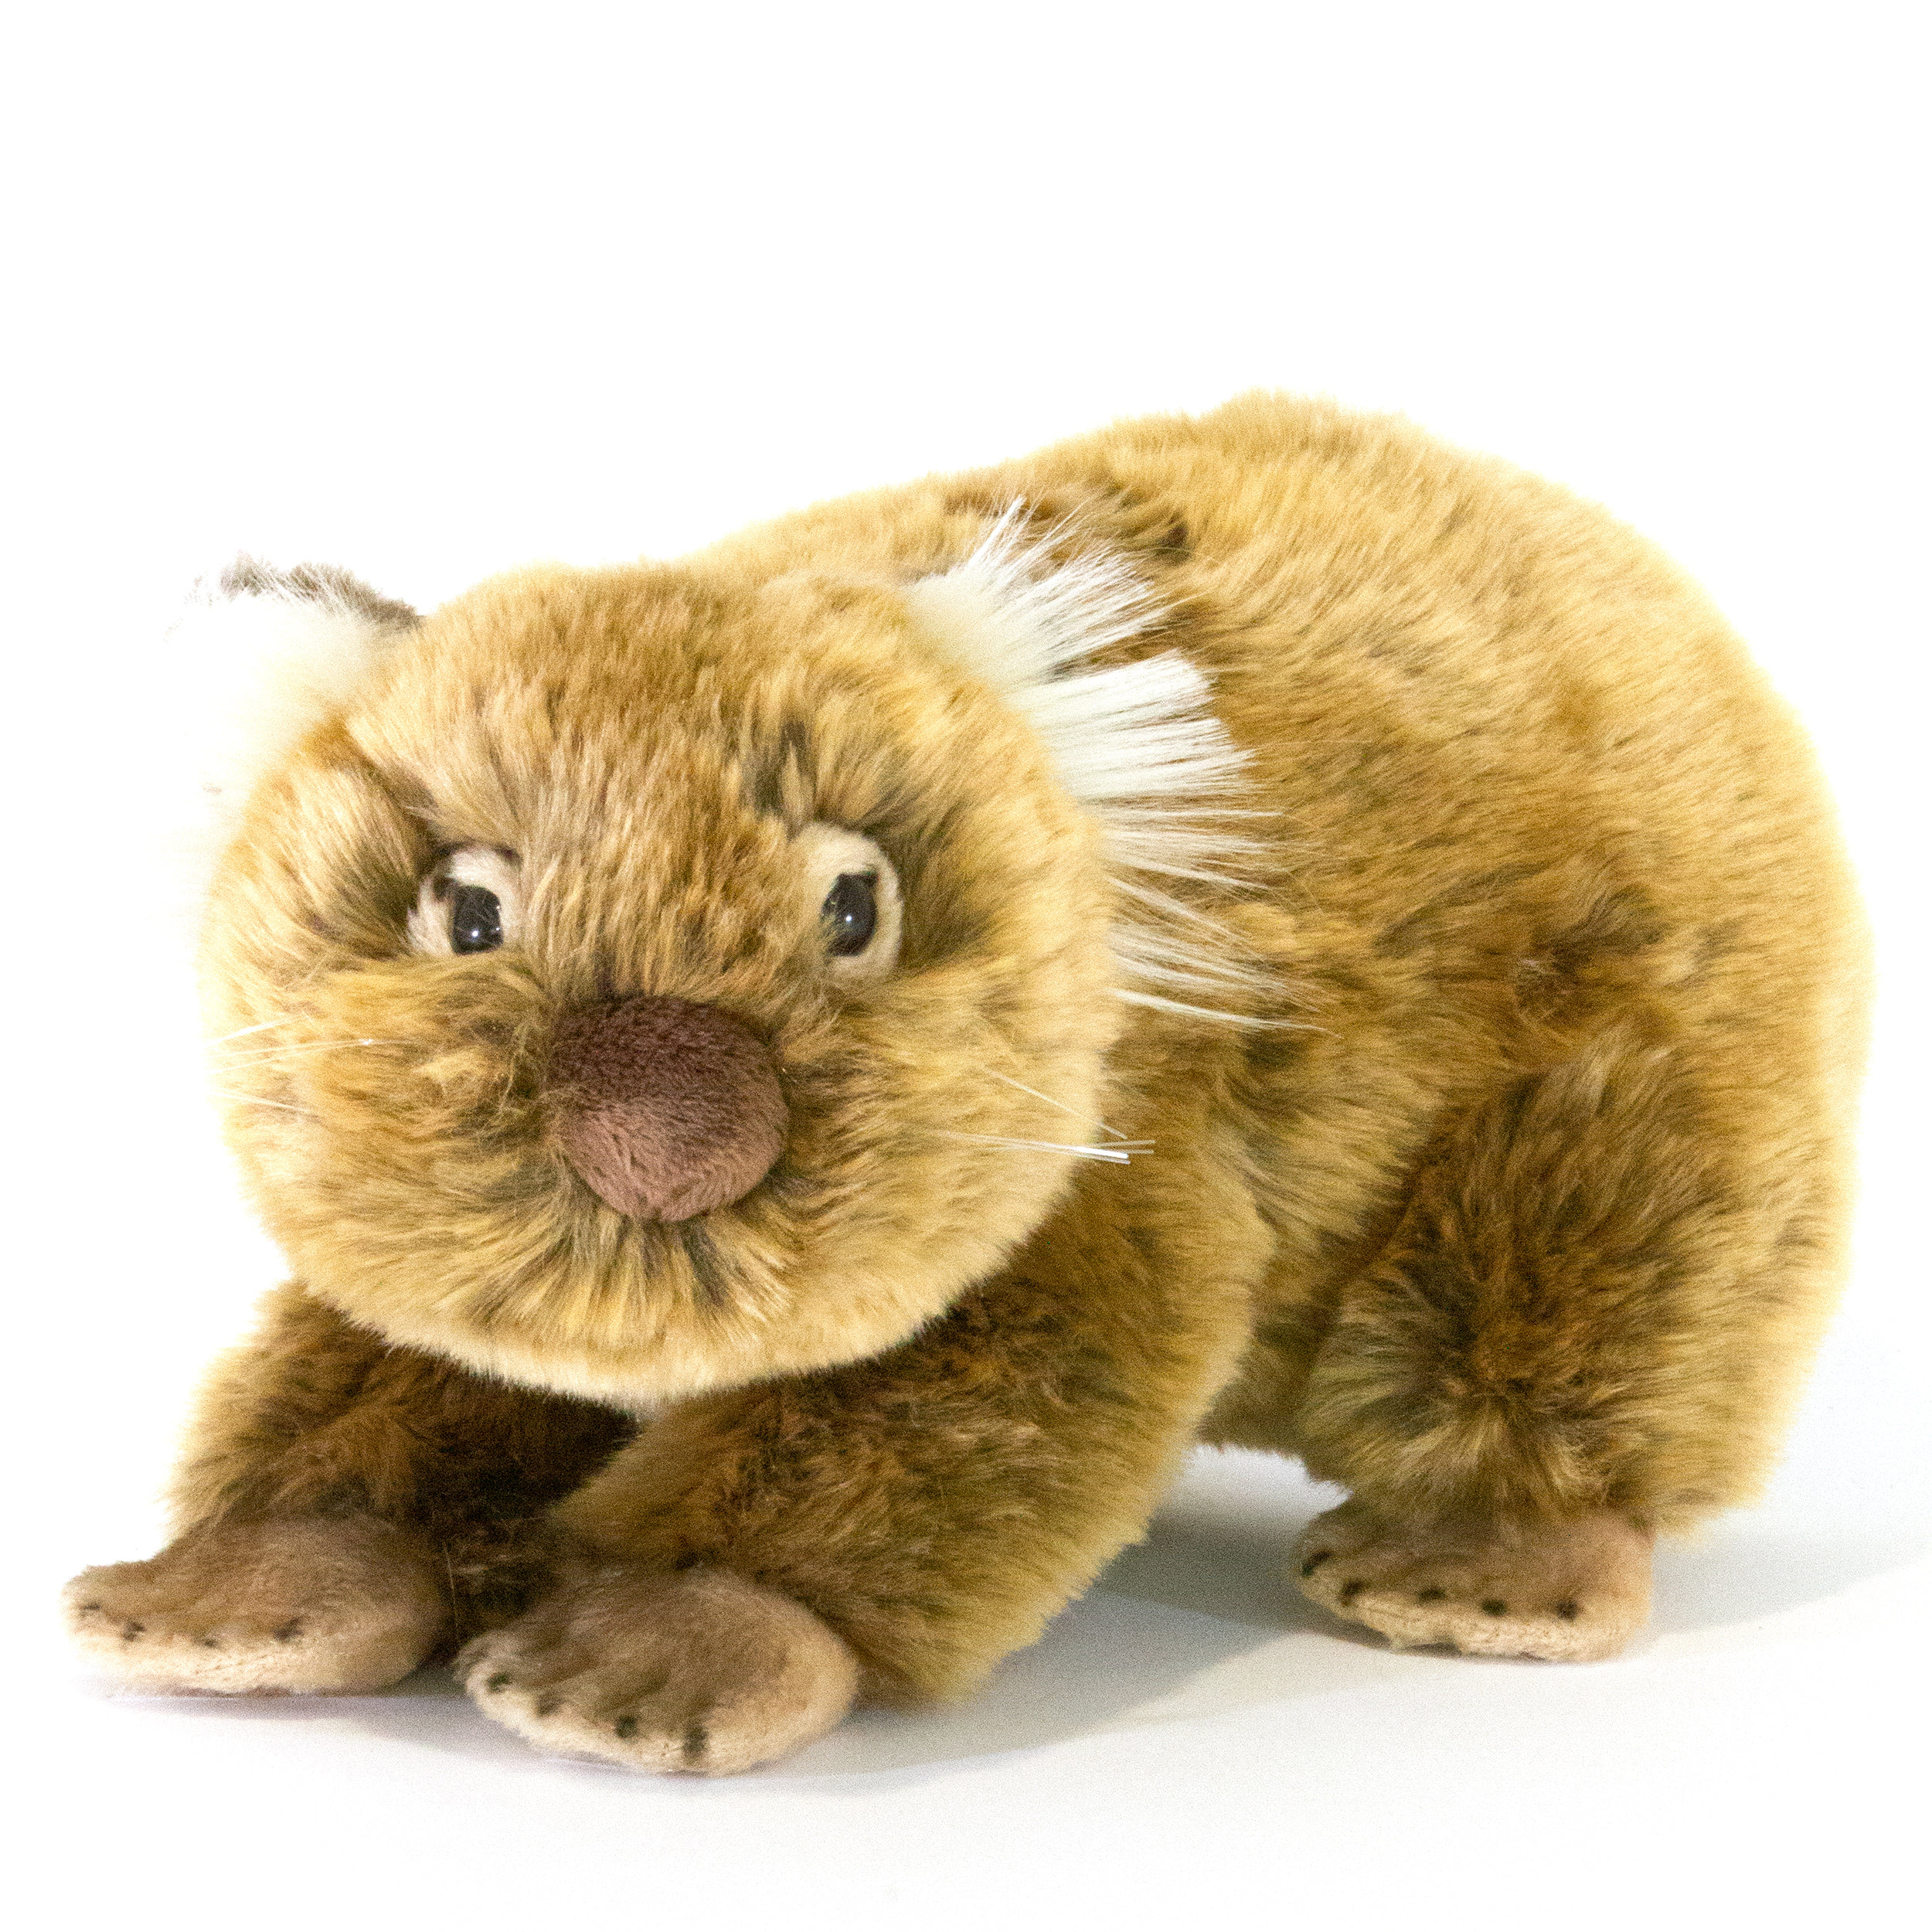 wombat plush animal